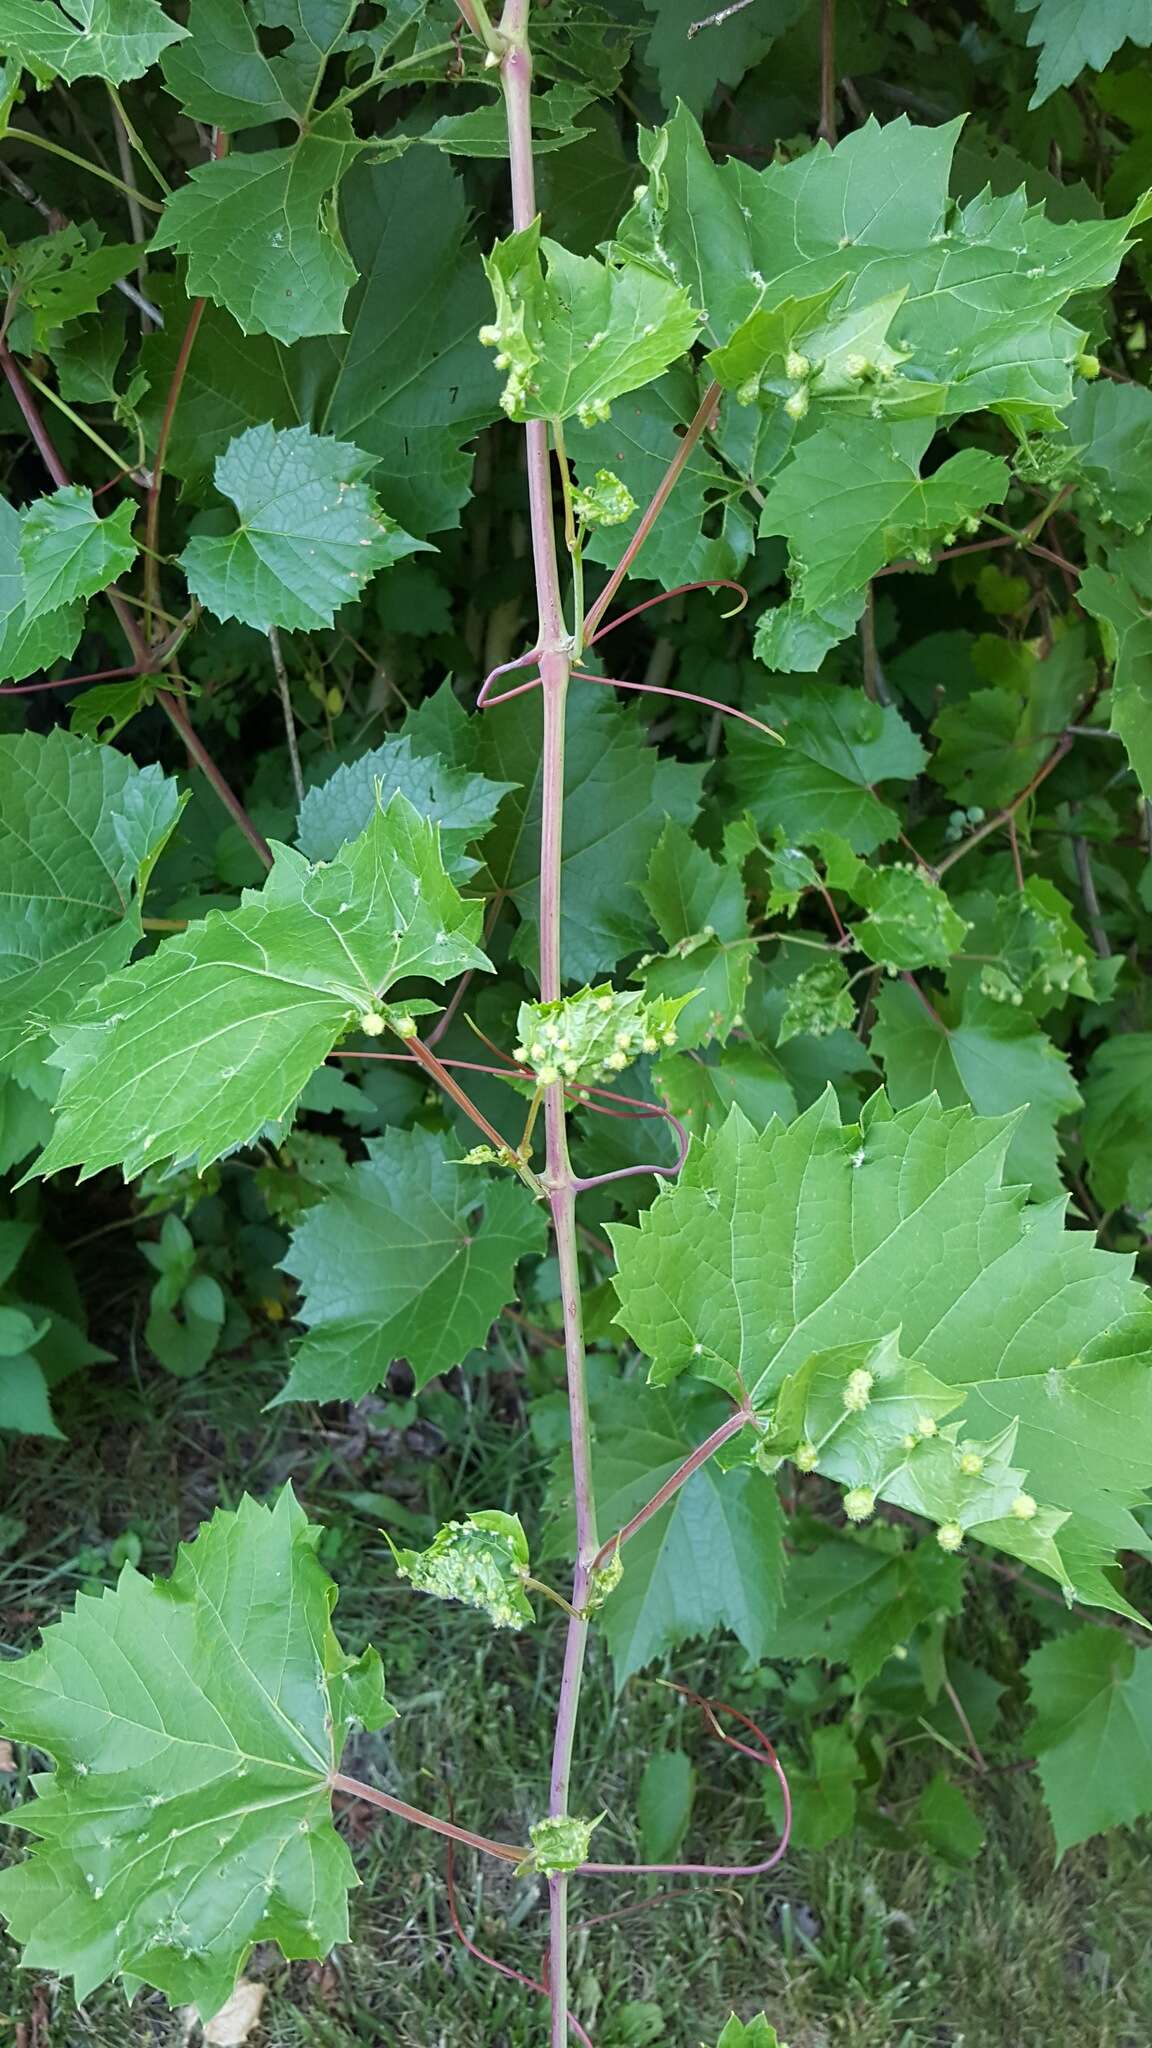 Image of grape phylloxera